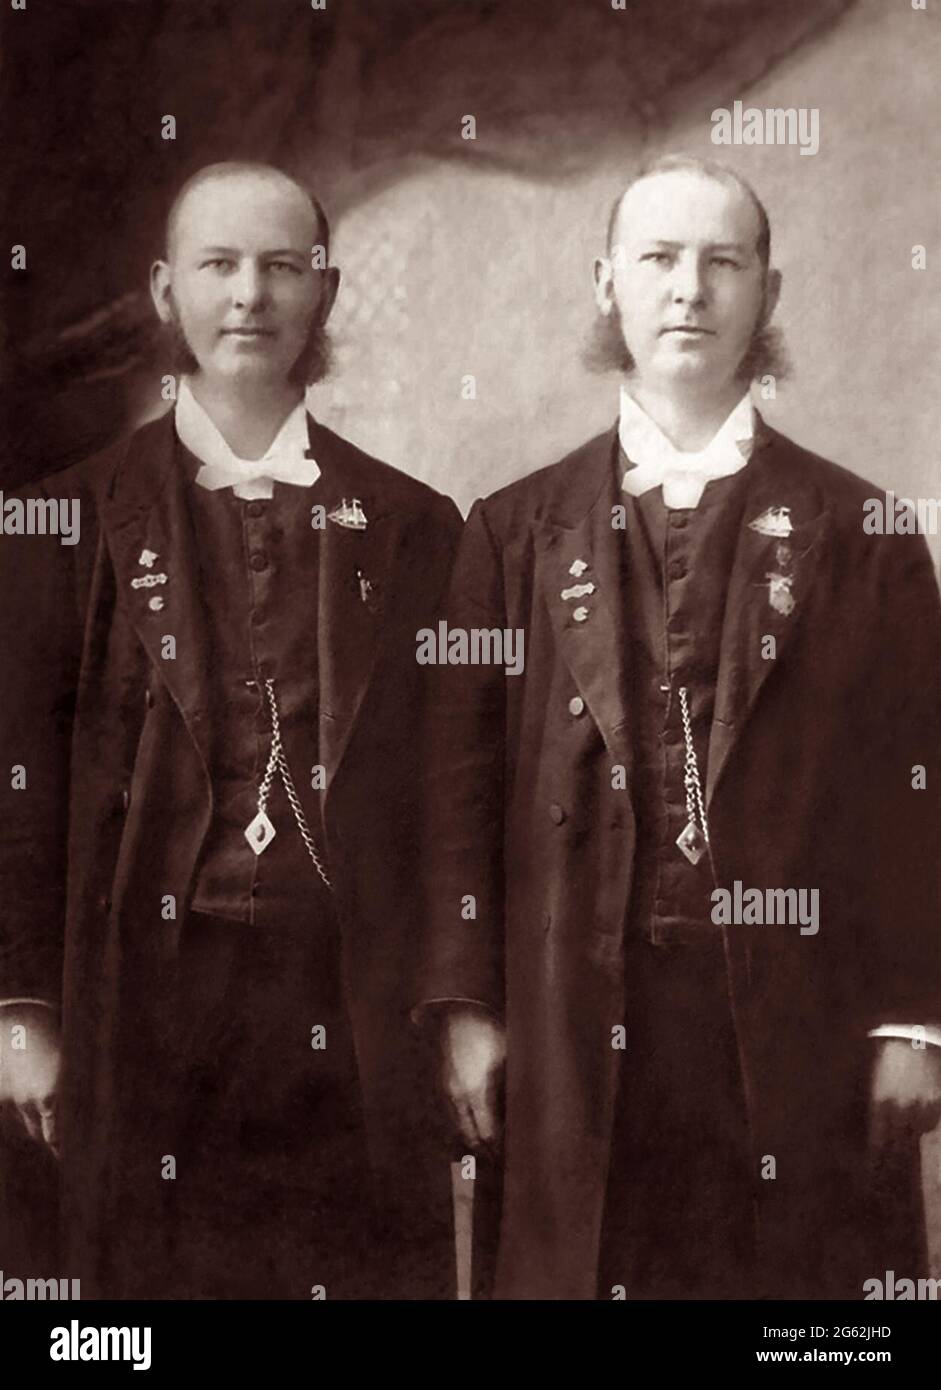 Die Rev. Morrill Twins, ordinierte Evangelisten und Pastoren der Gospel Ship Union Church in Chicago, Illinois. Foto von Wendt, Boonton, NJ, c1890s. Stockfoto